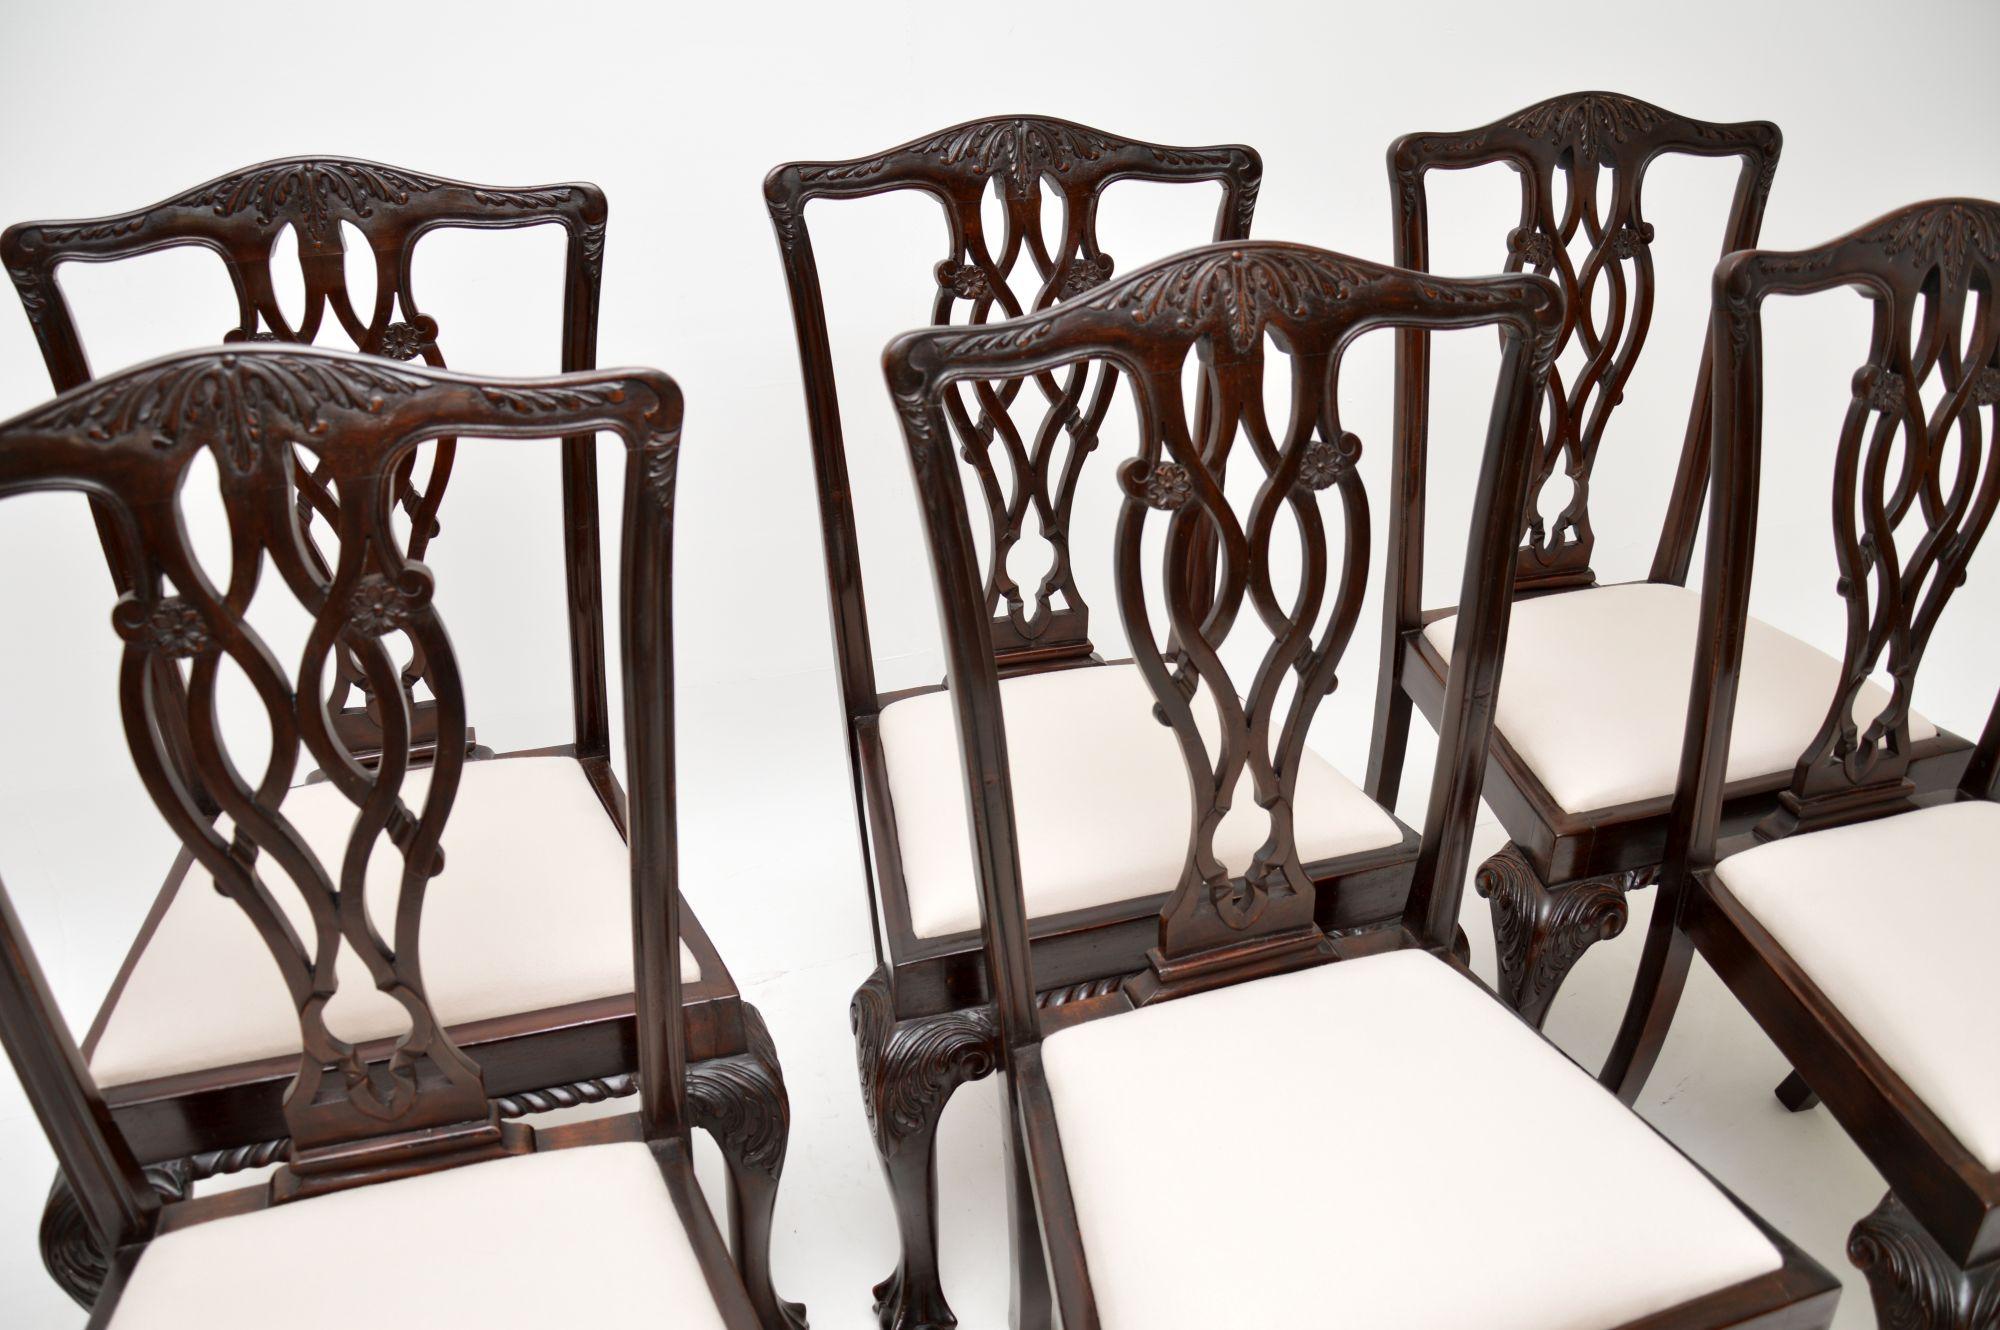 Un excellent ensemble de chaises de salle à manger antiques dans le style classique Chippendale. Ils ont été fabriqués en Angleterre et datent d'environ 1890-1910.

La qualité est superbe, ils sont très robustes et bien faits. Les dossiers percés